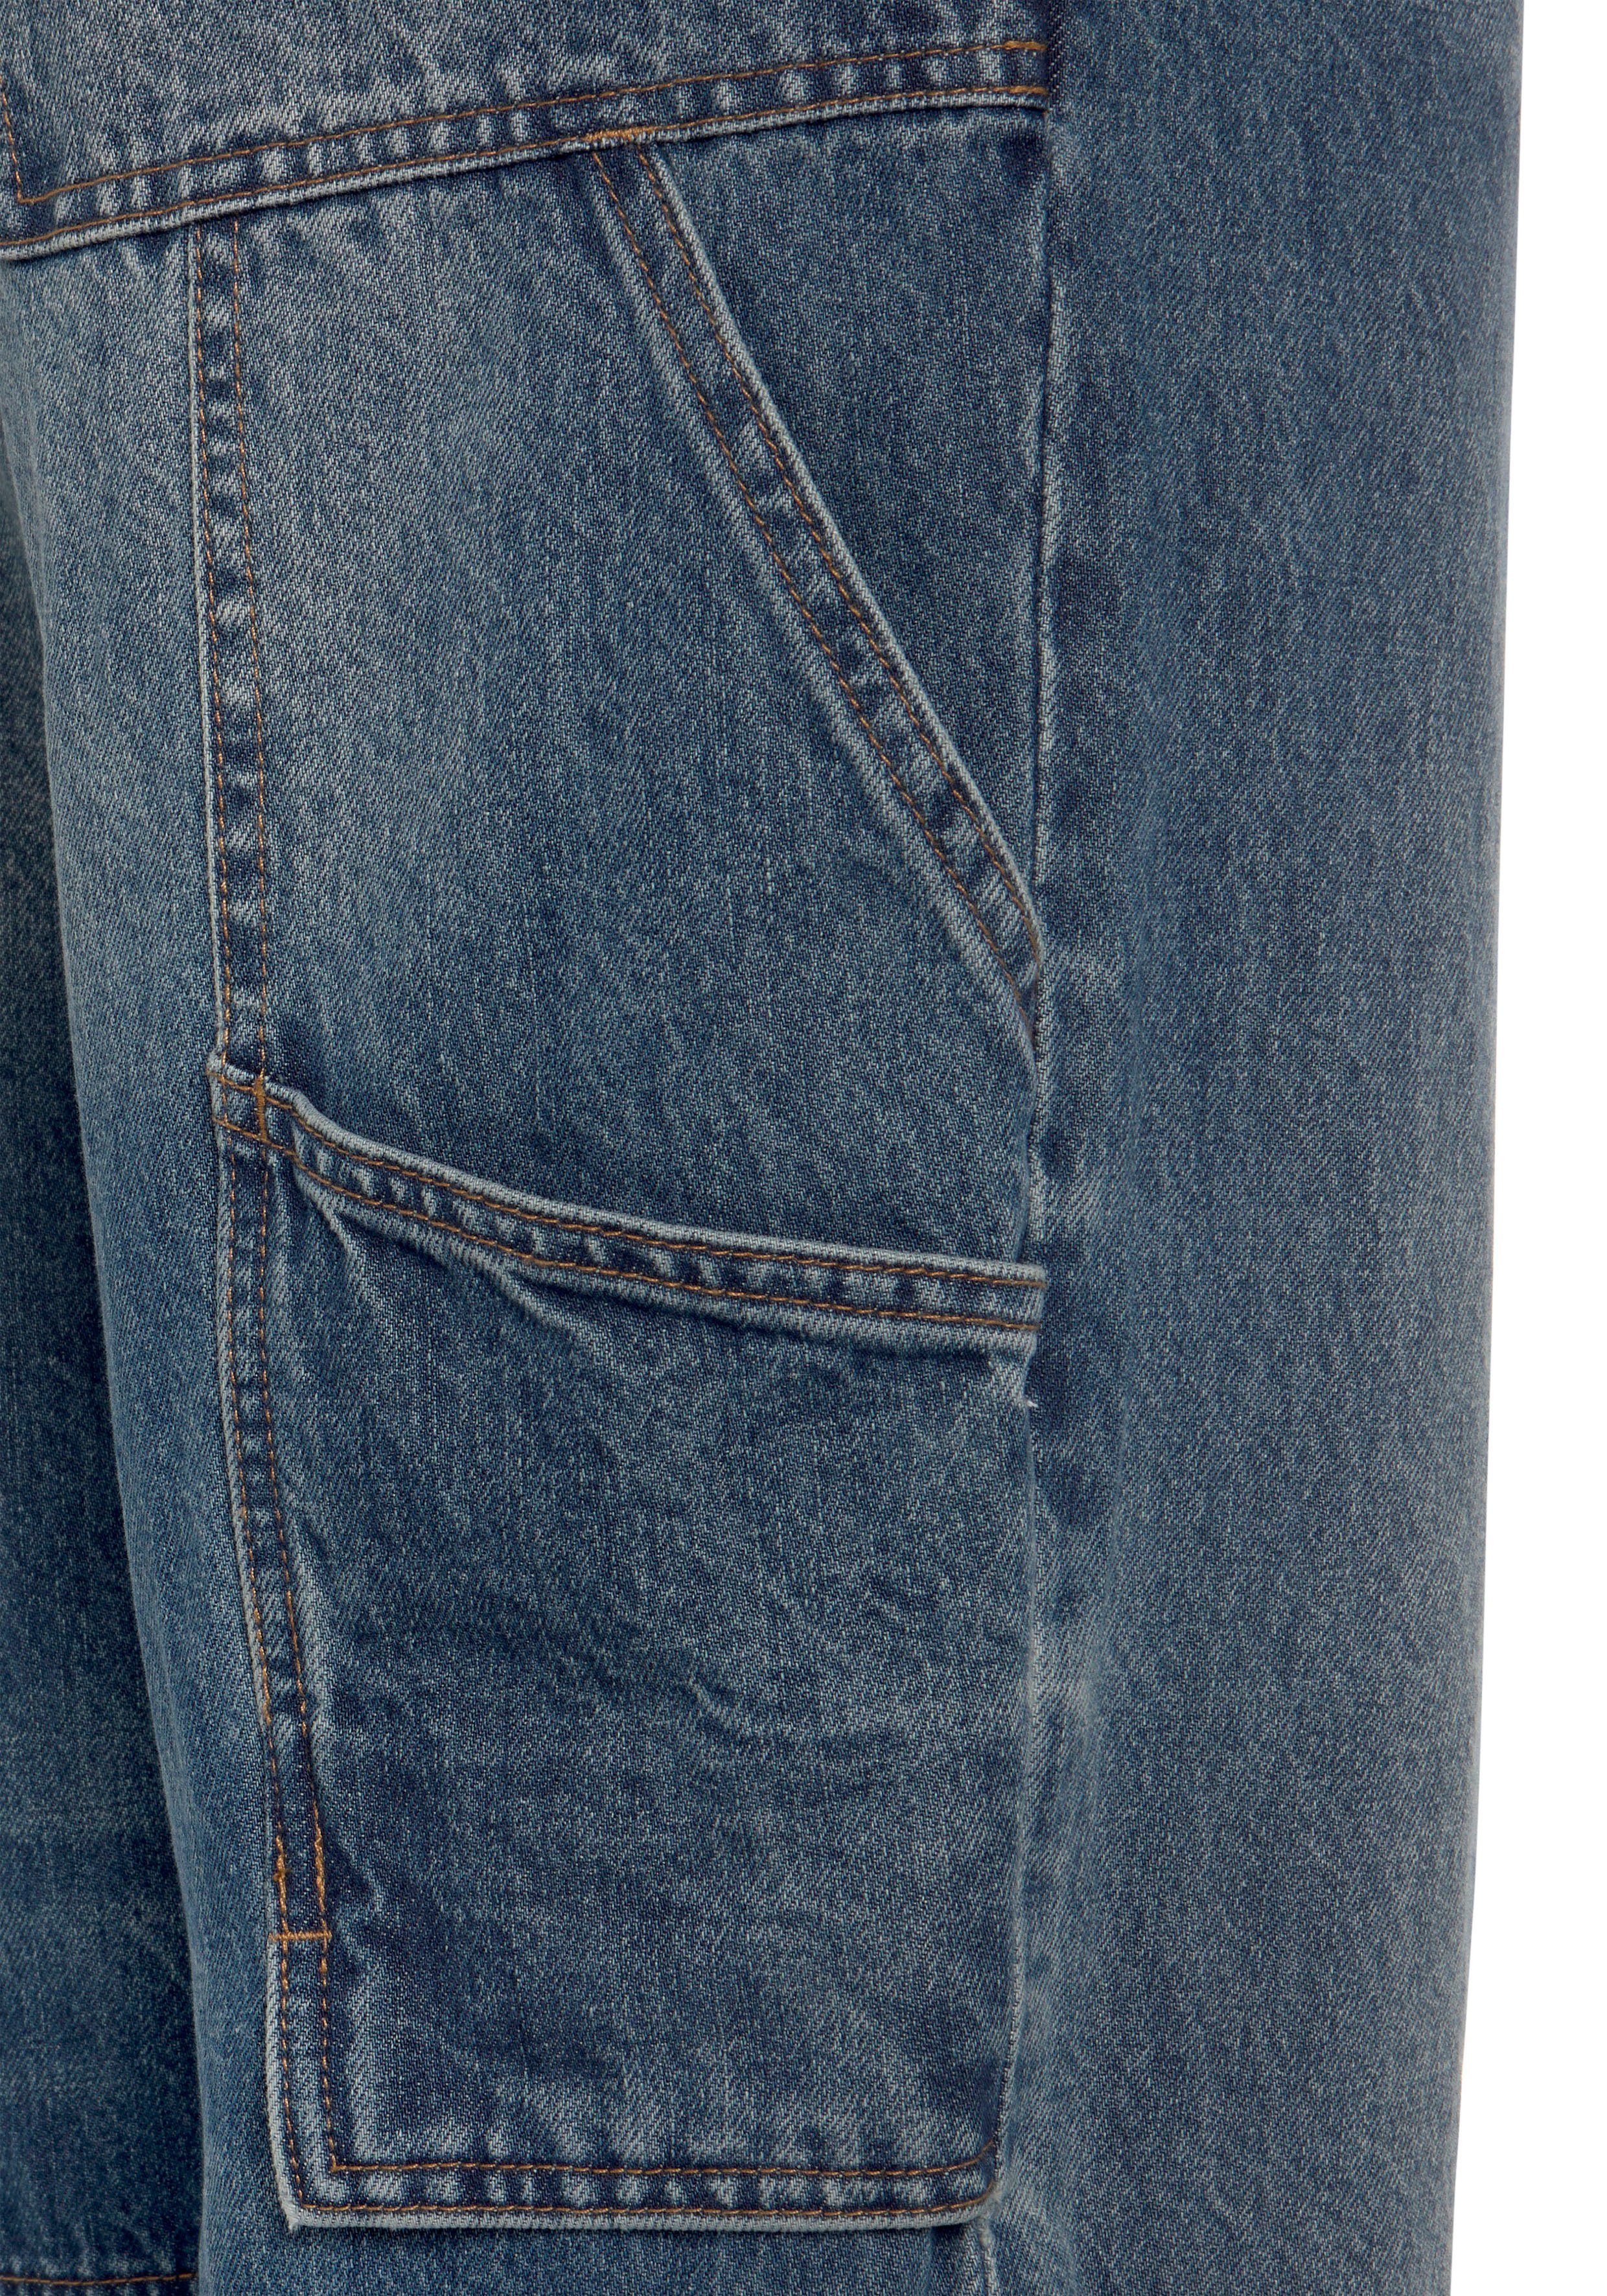 Northern Country Arbeitshose Multipocket Bund, (aus Jeansstoff, mit mit fit) comfort robuster praktischen 9 Jeans Taschen dehnbarem 100% Baumwolle